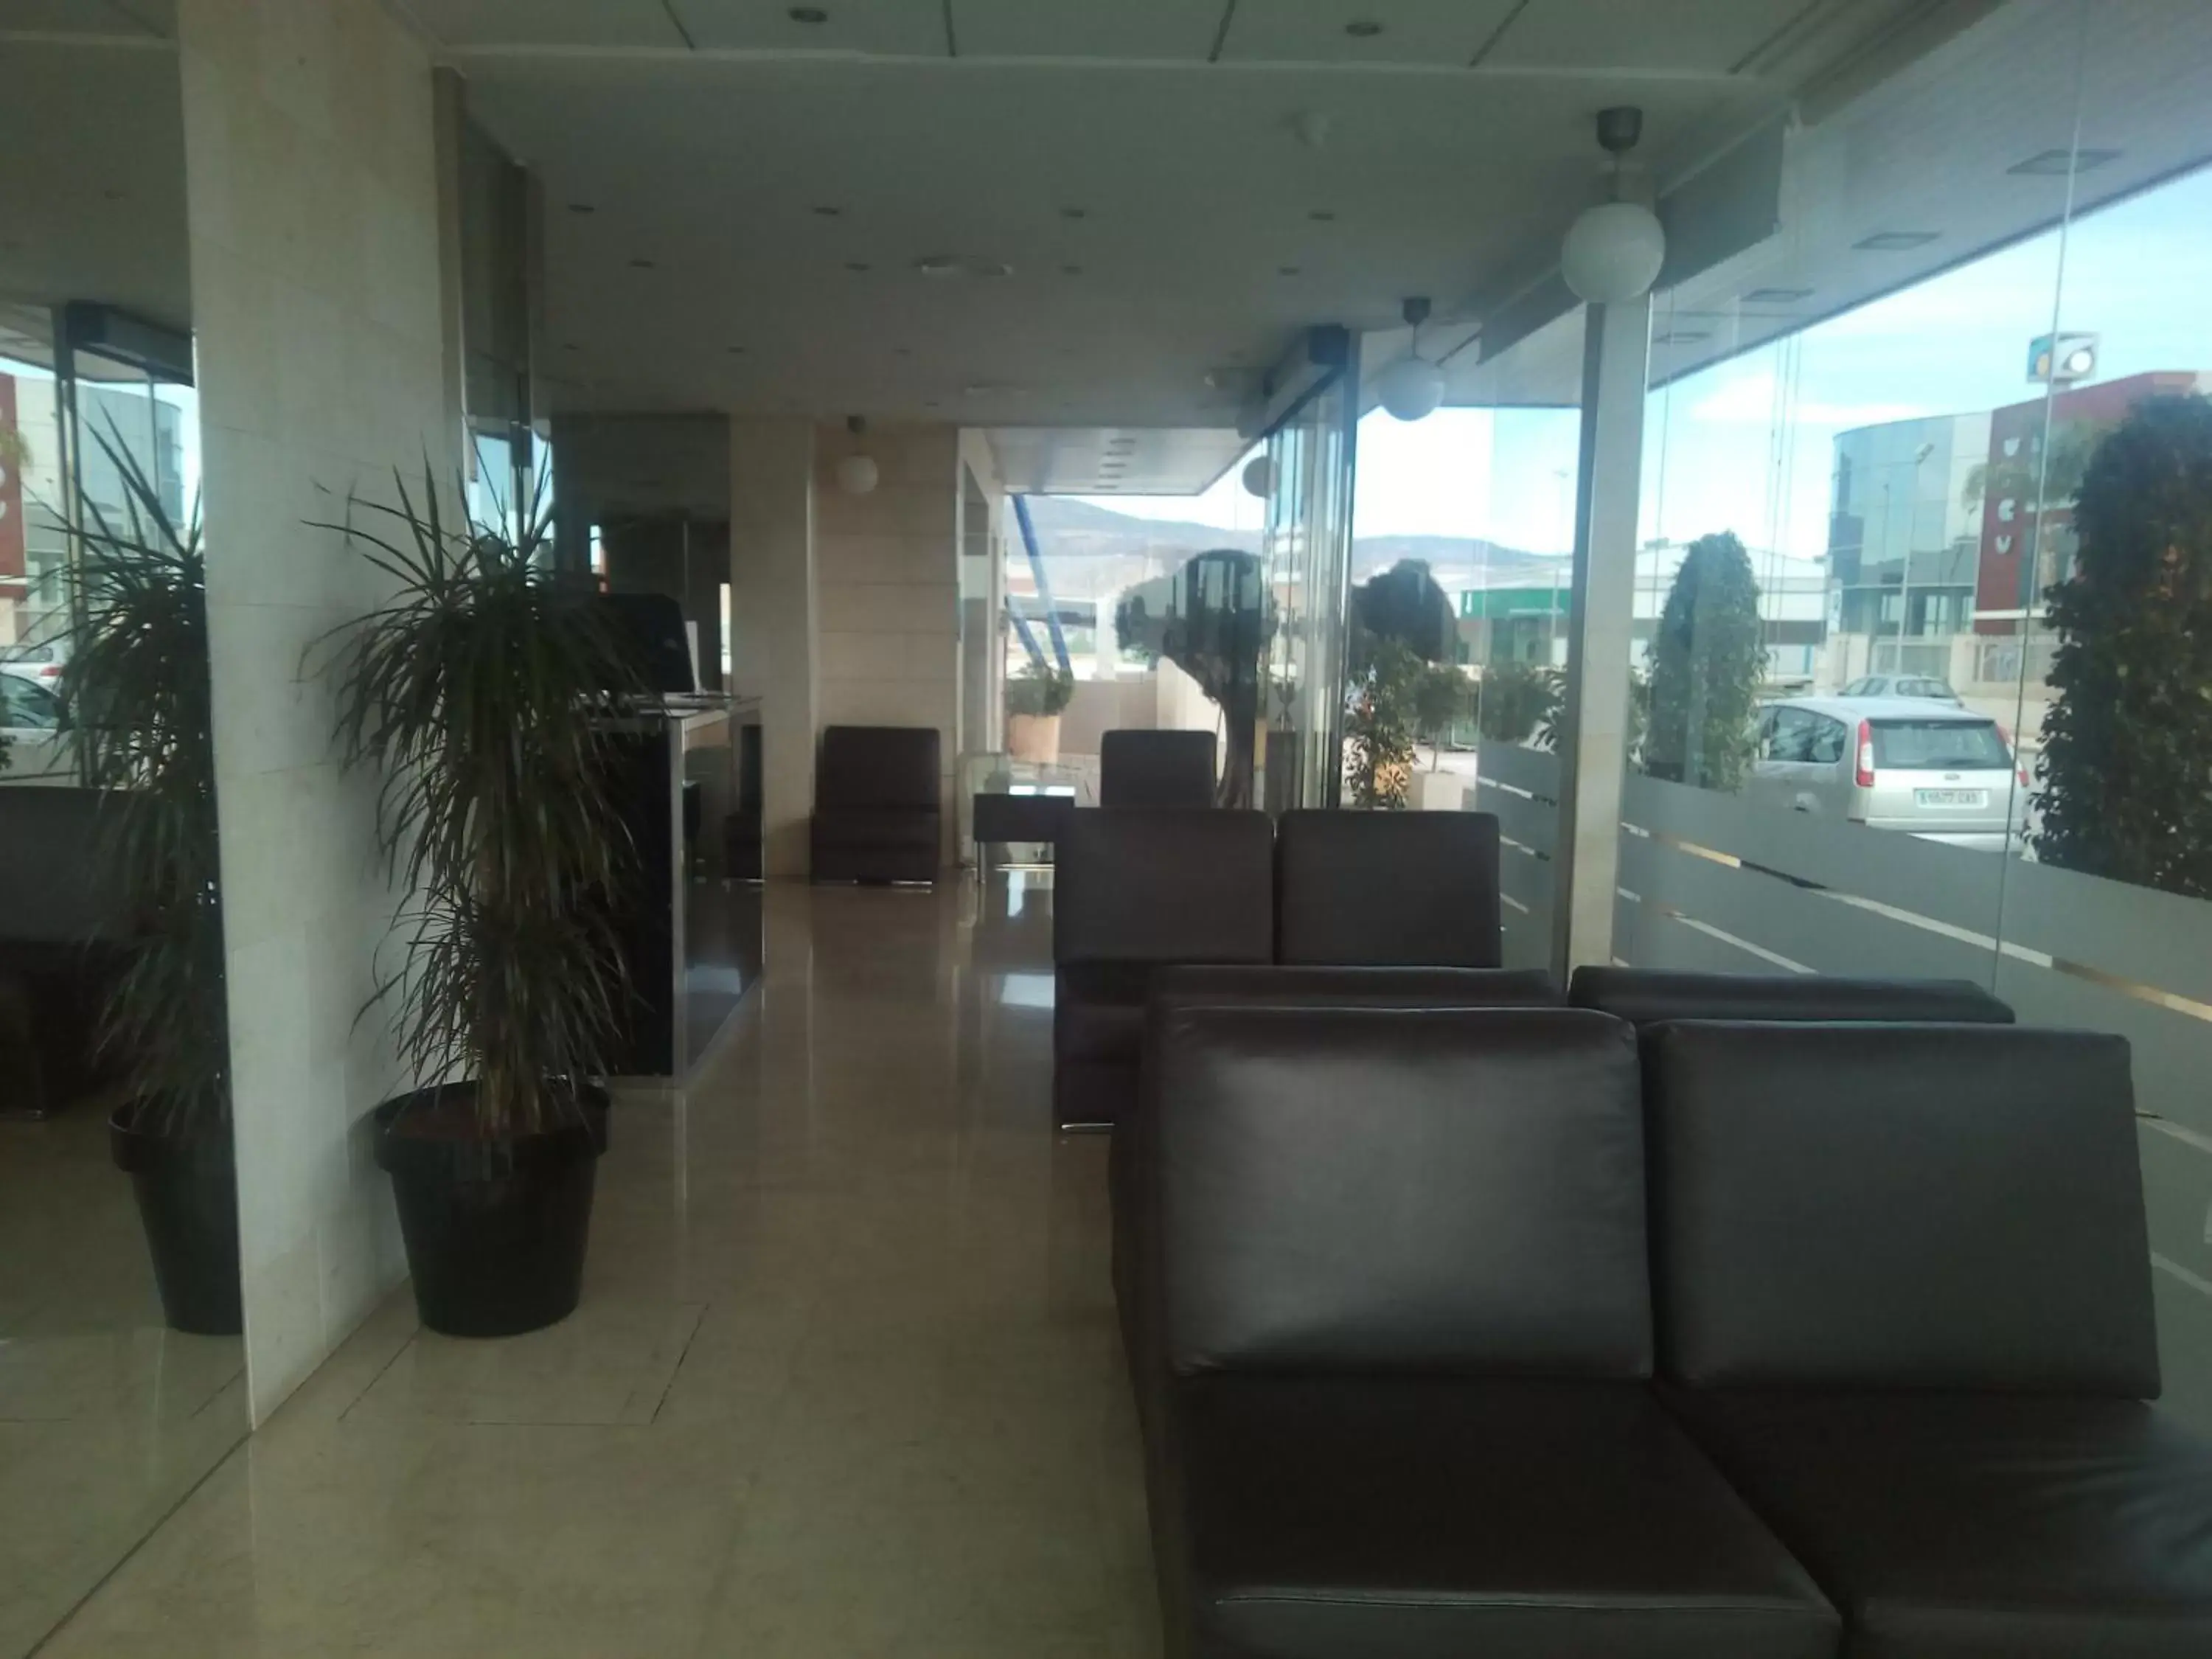 Lobby or reception, Lobby/Reception in Olimpia Hoteles